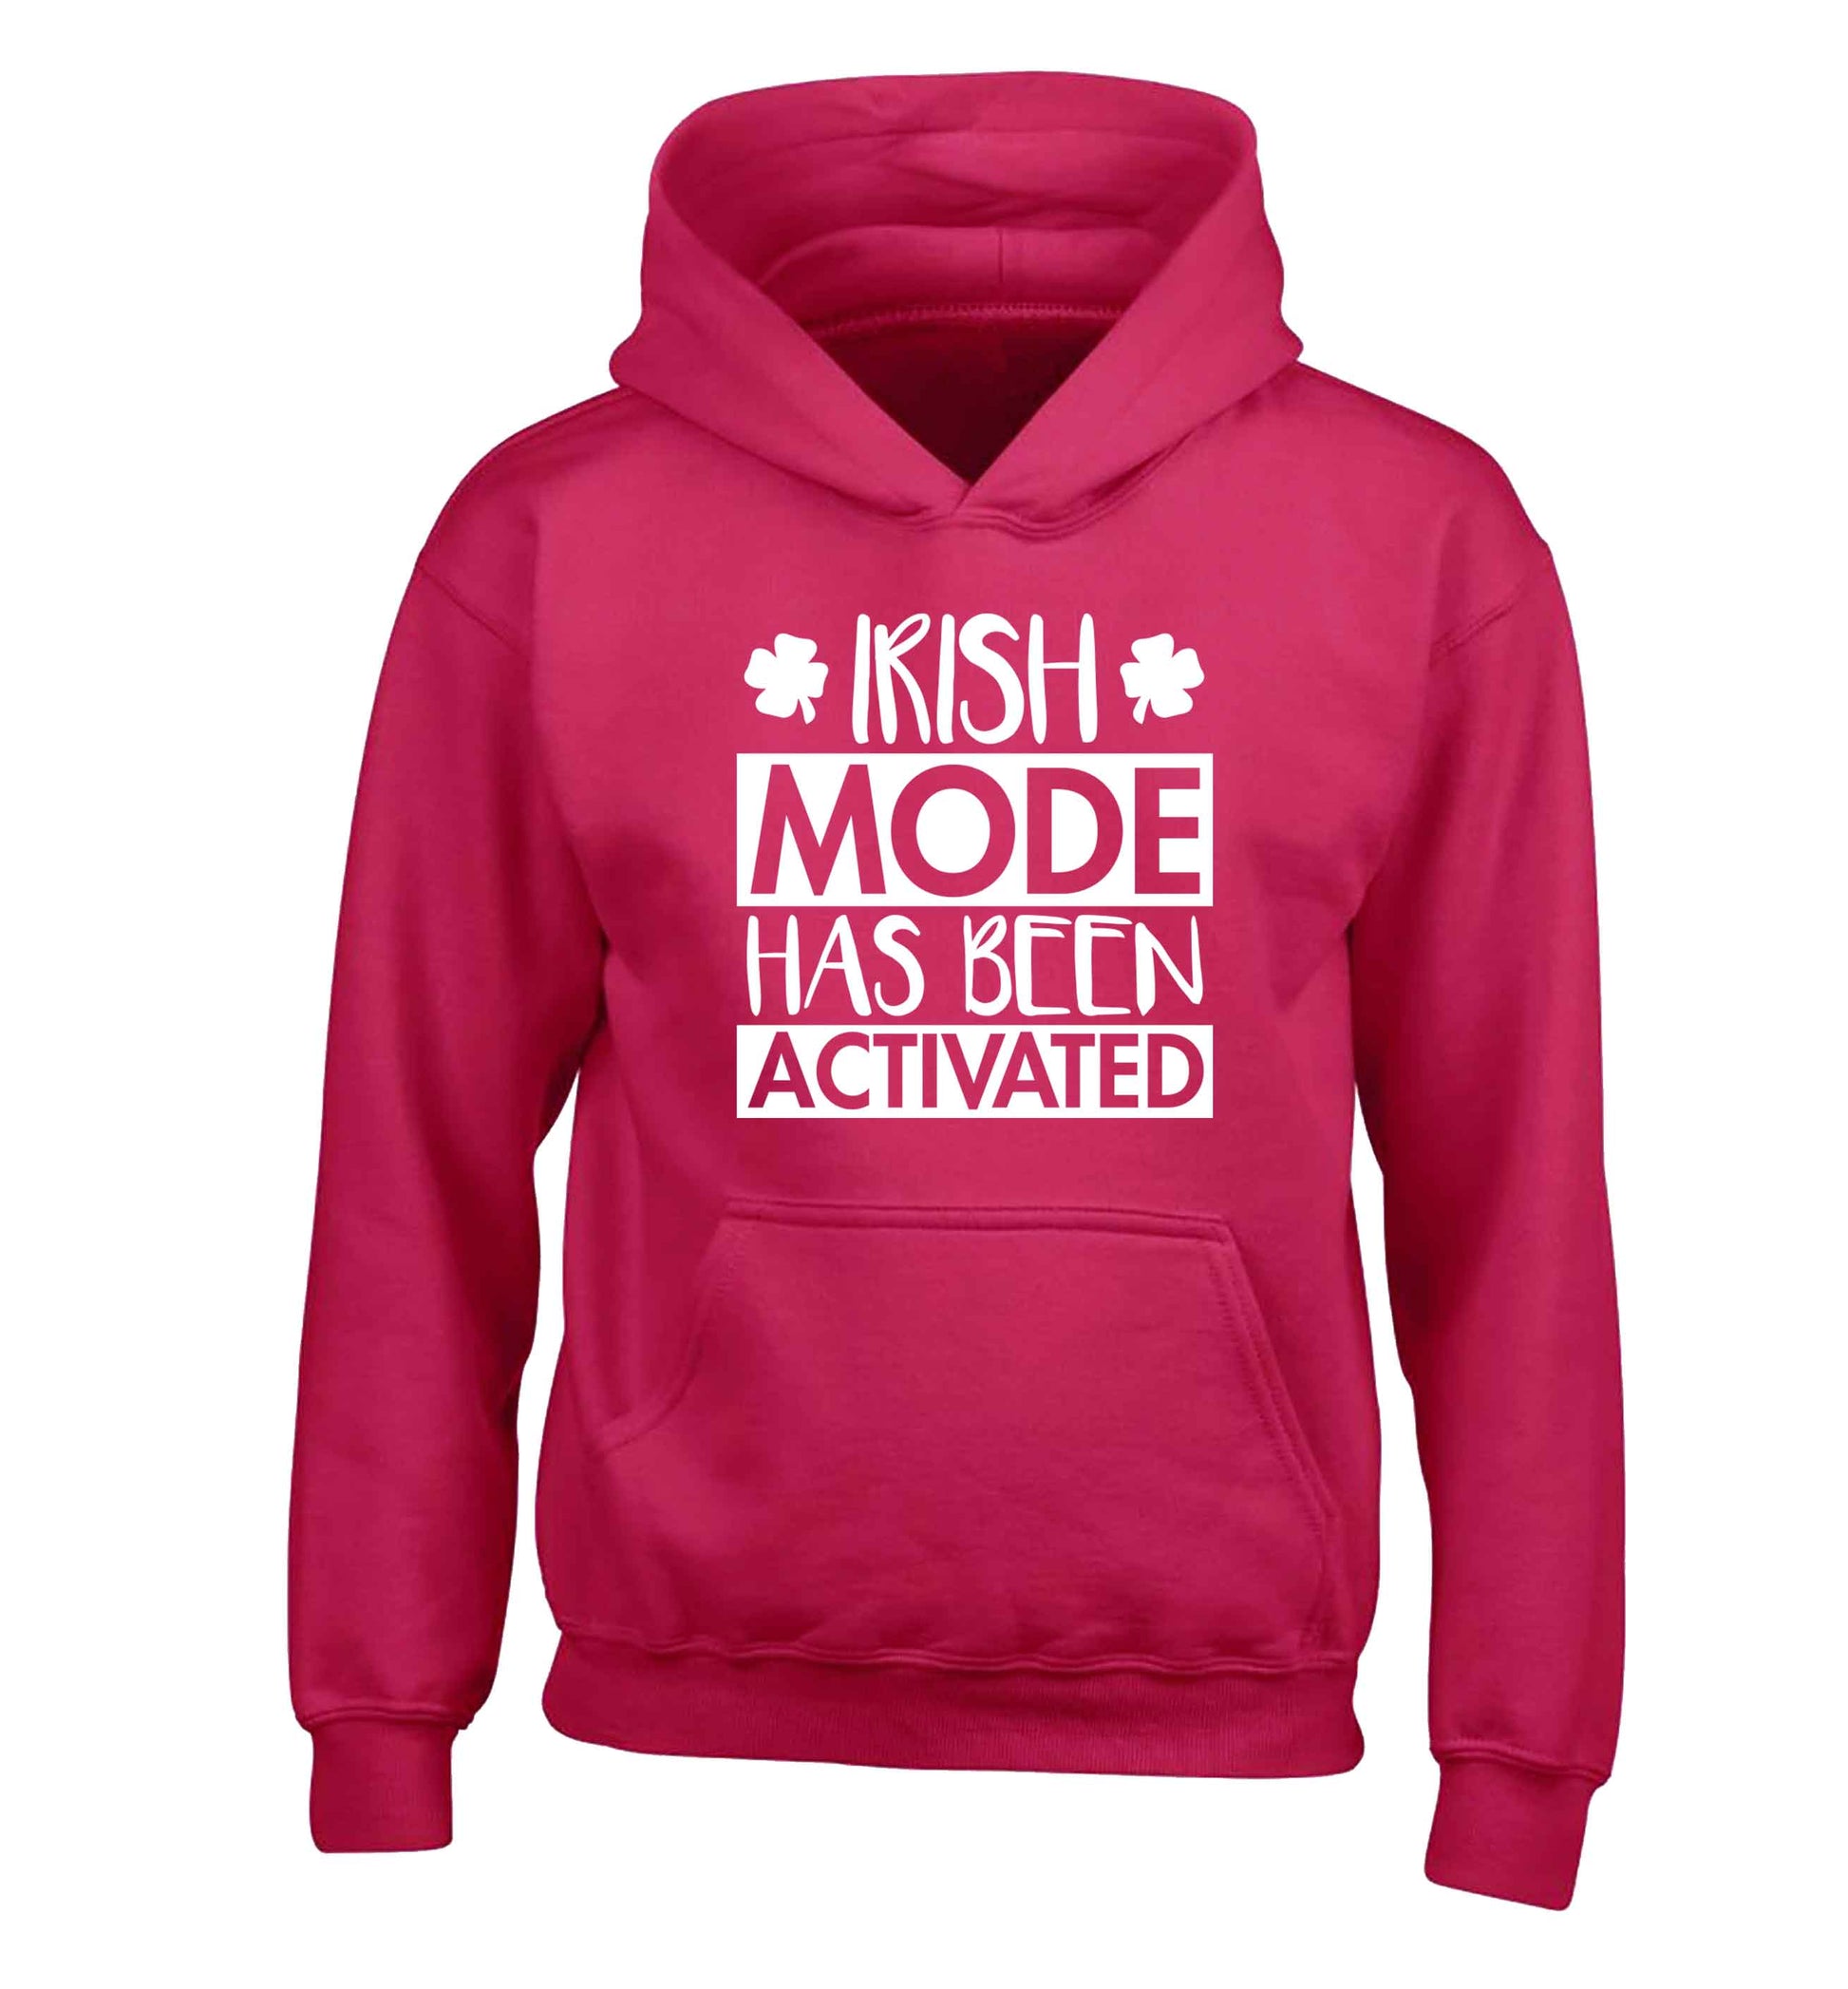 Irish mode has been activated children's pink hoodie 12-13 Years